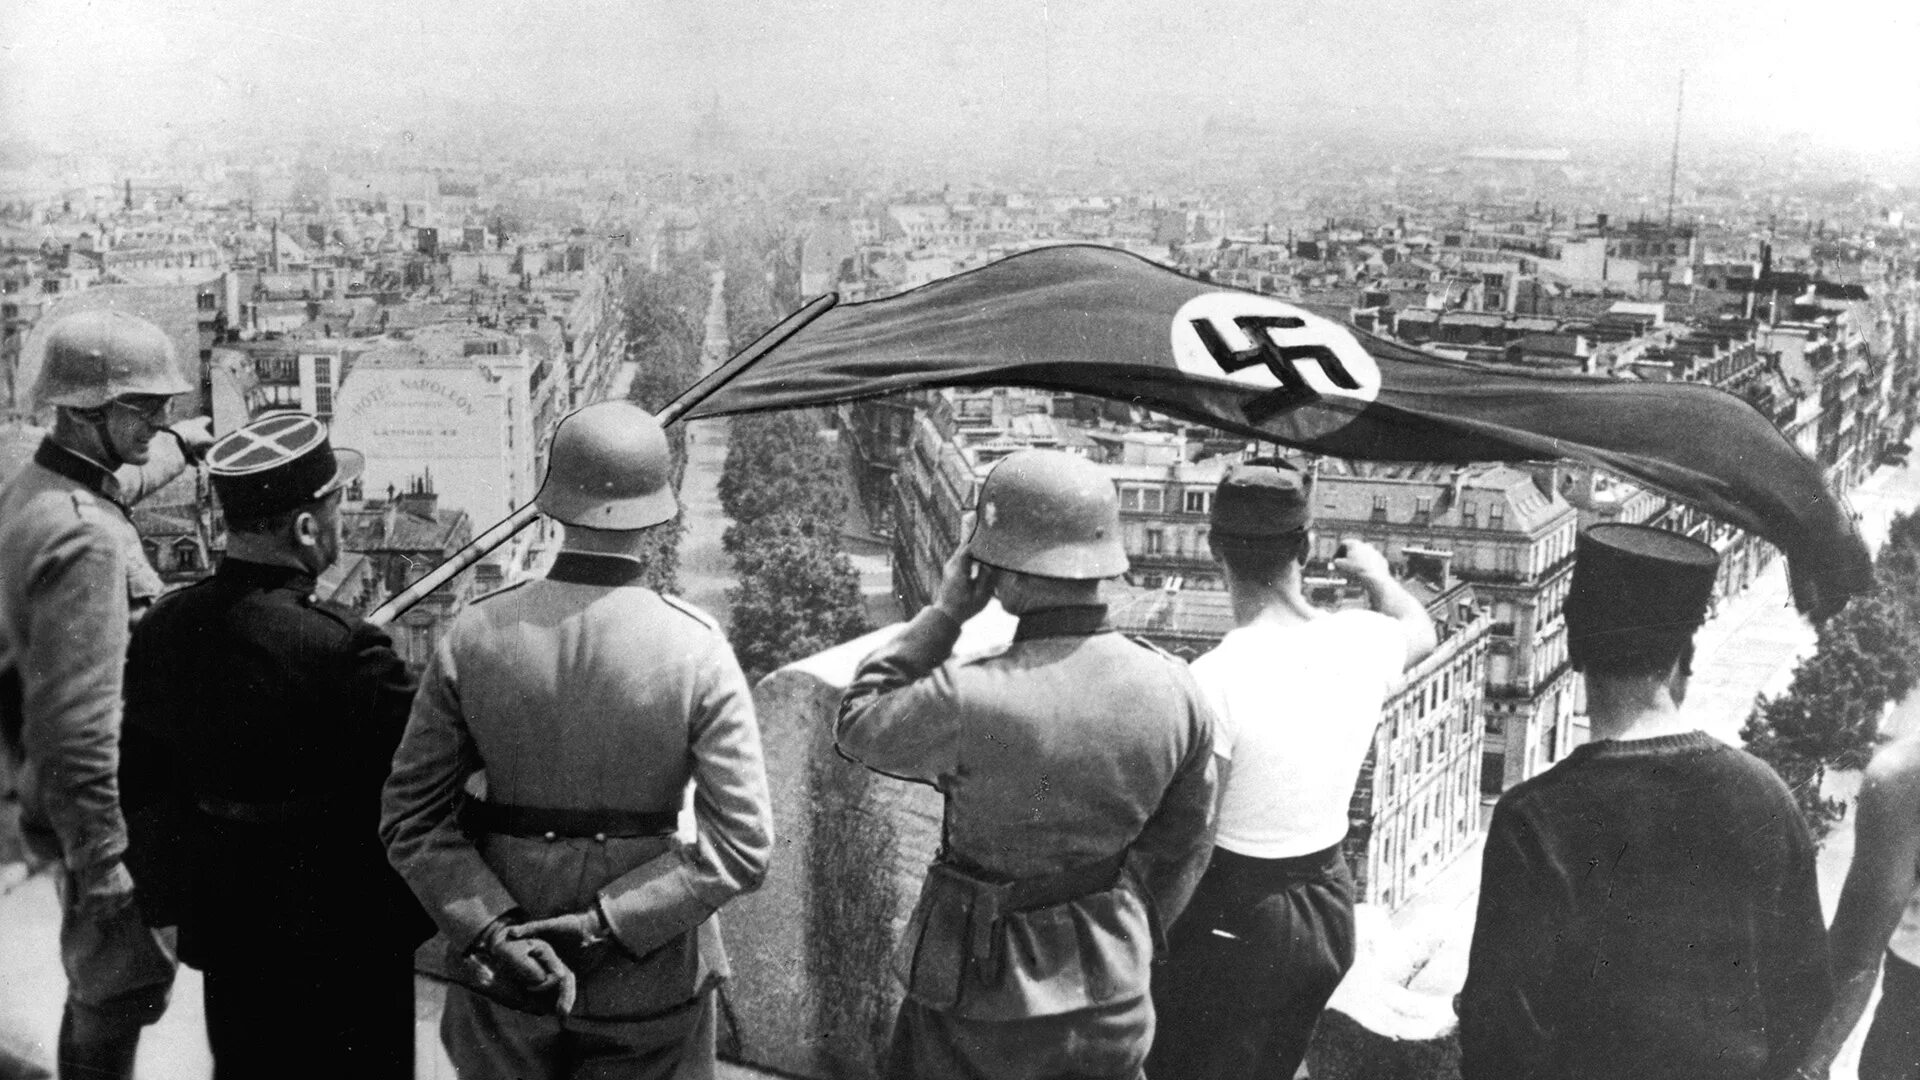 Нападение гитлера. Немцы в Париже 1940. Германия против Франции 1940. Оккупация Парижа германскими войсками 1940.